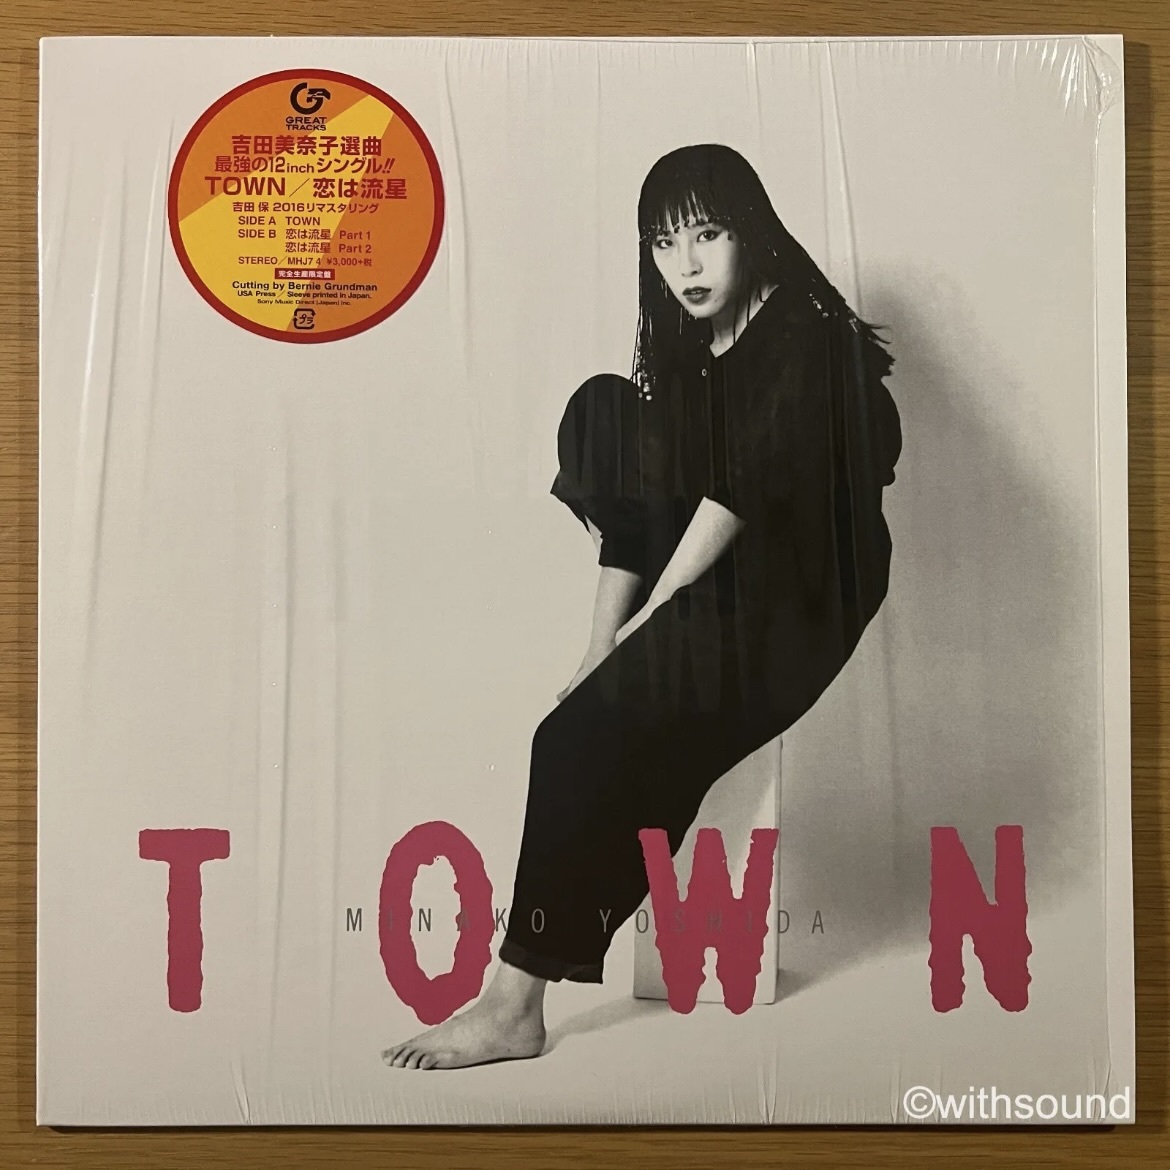 吉田美奈子 Town/恋は流星 (Part 1&2) 国内再発盤 12 EP 和モノ シティポップ CITY POP 2016 MHJ7 4_画像1